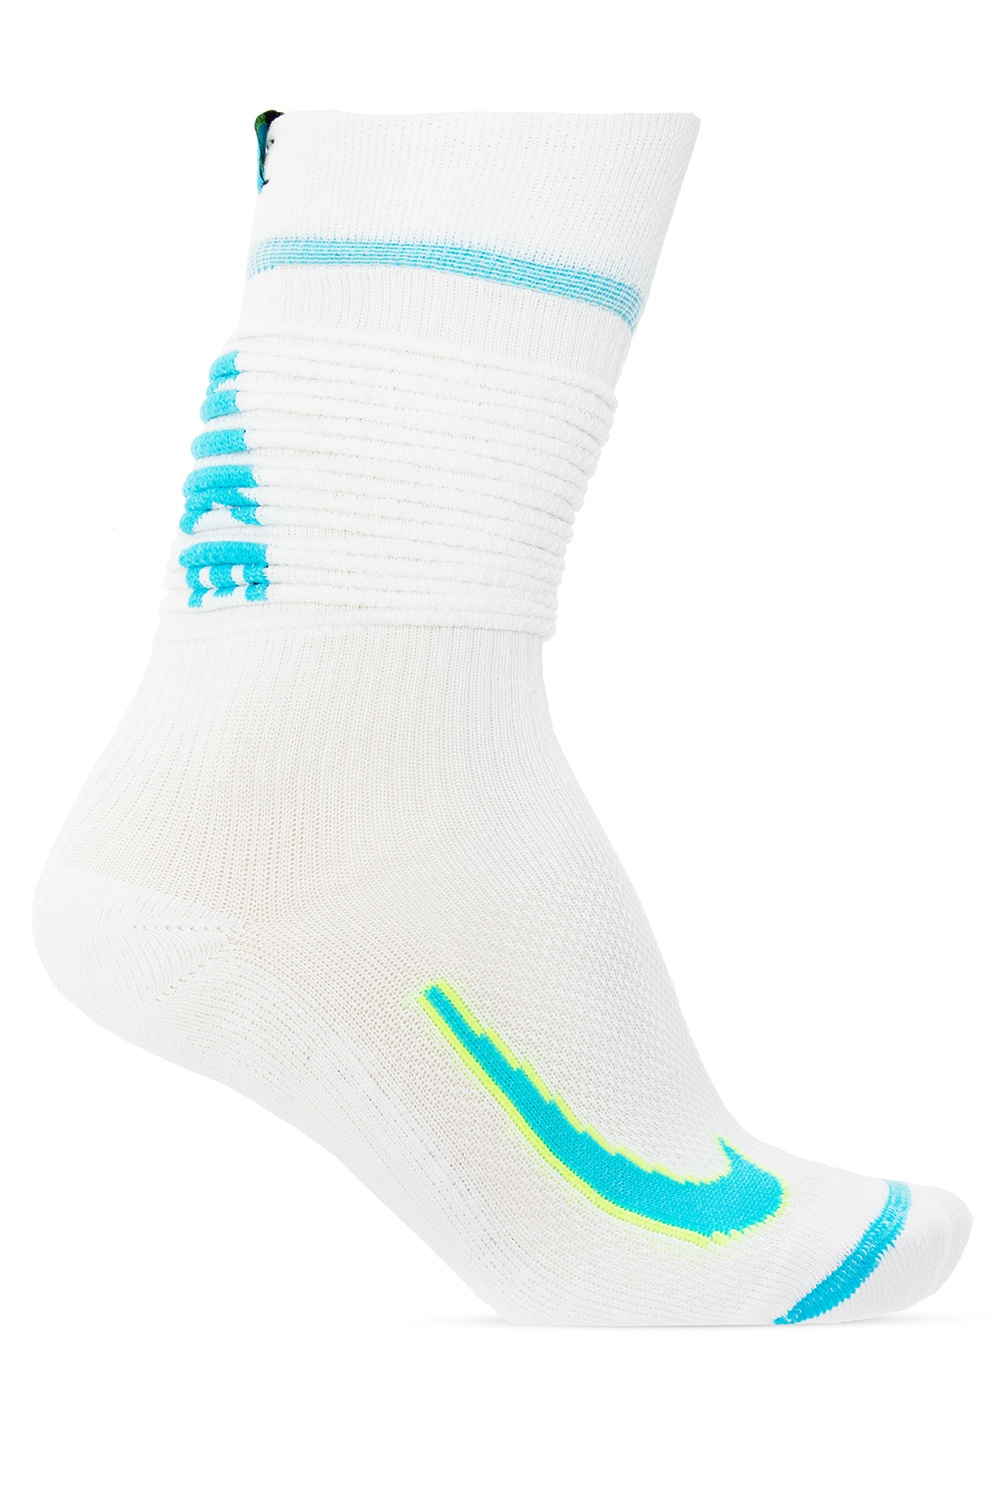 Logo socks Nike - Vitkac HK